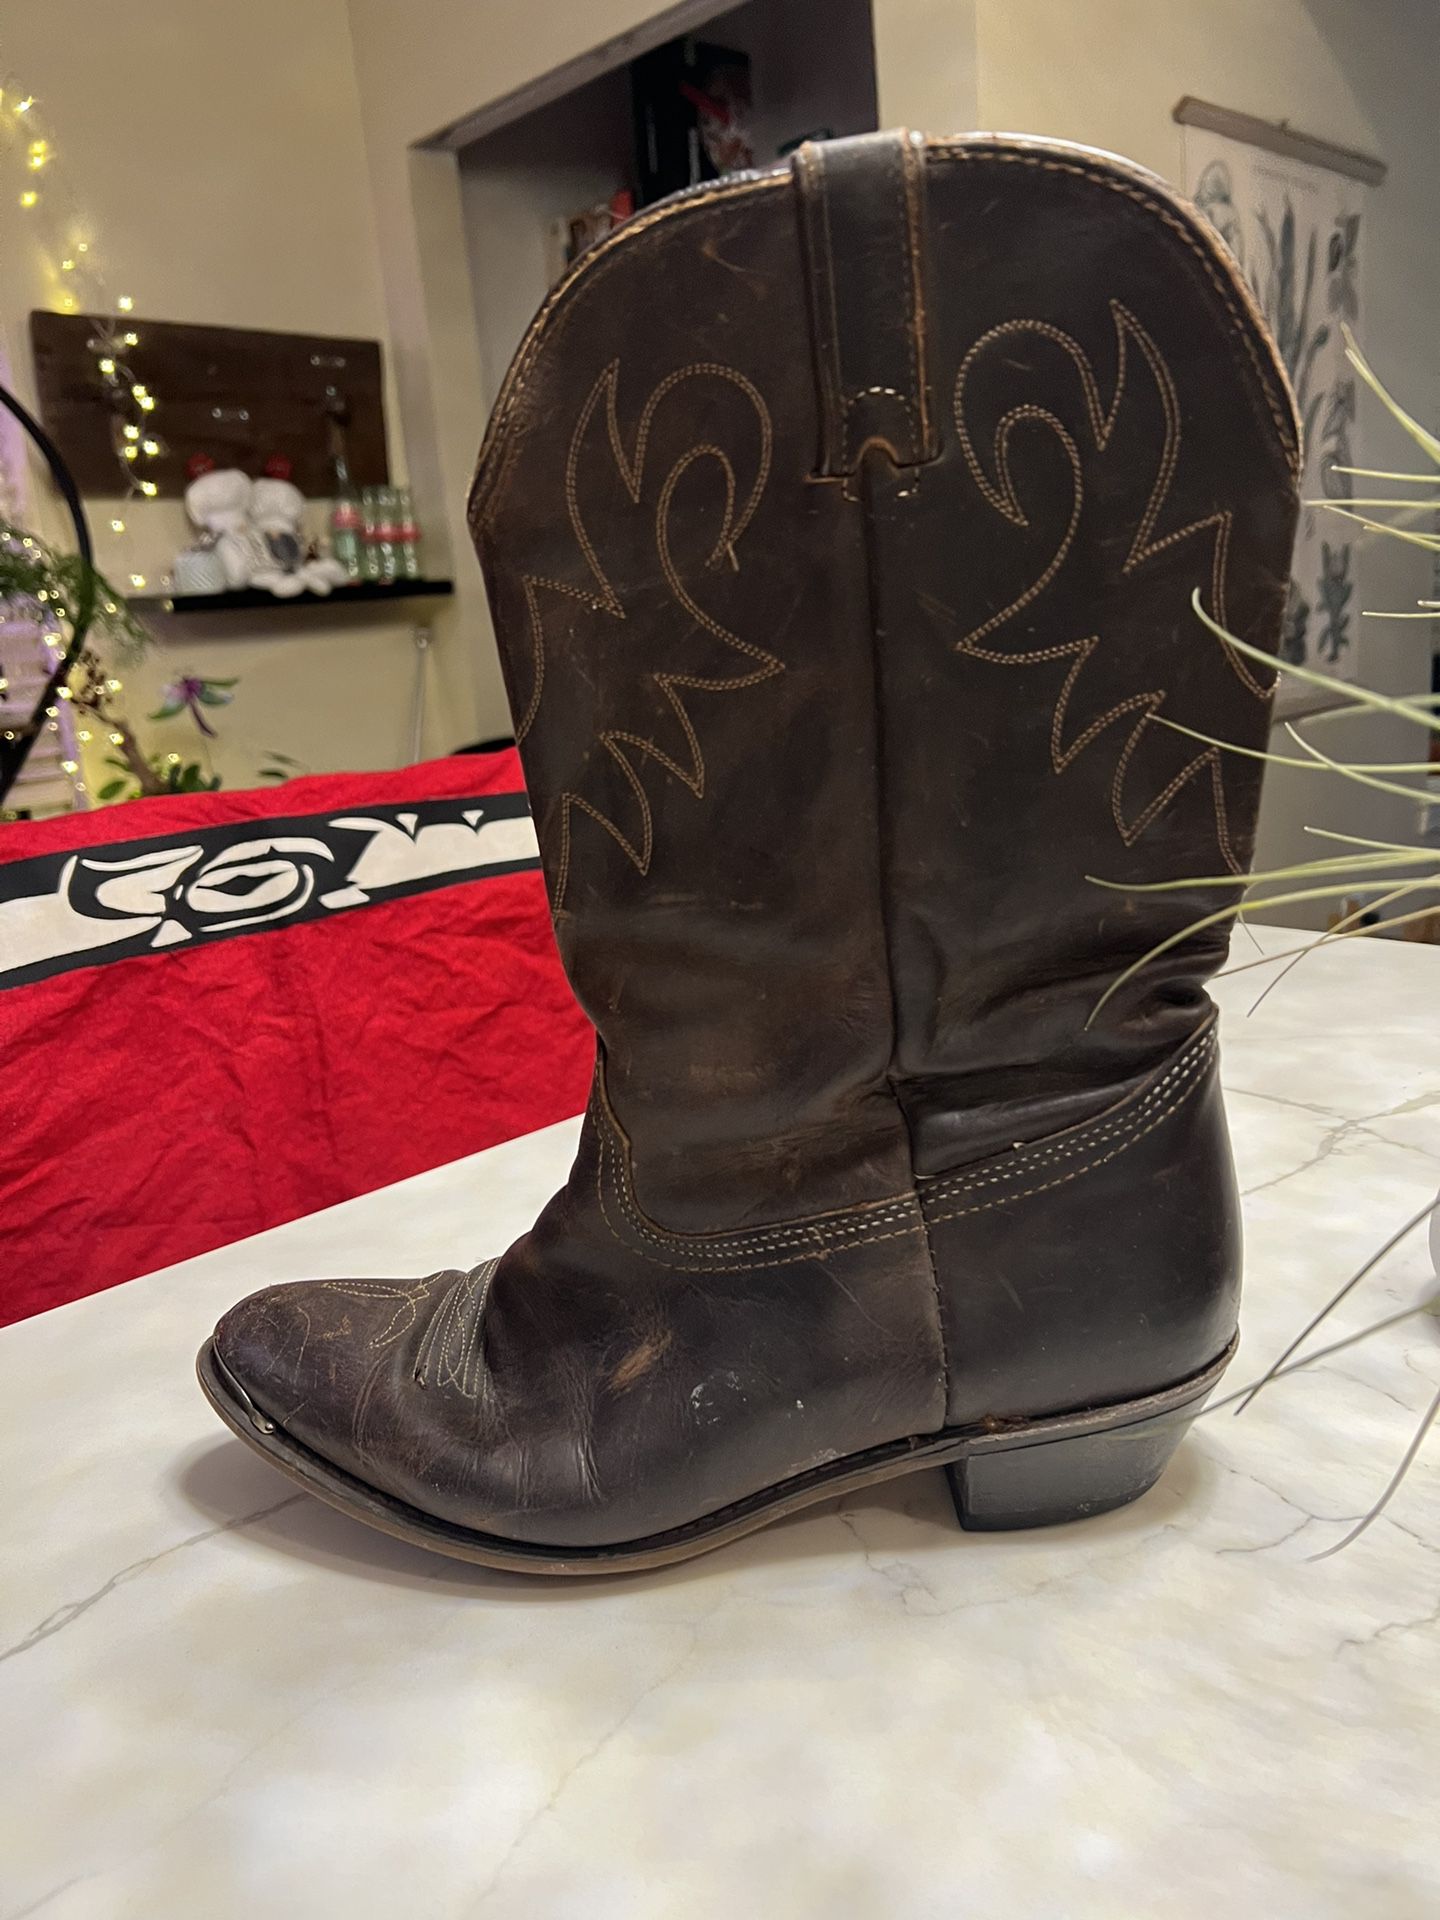 Authentic Cowboy Boots.